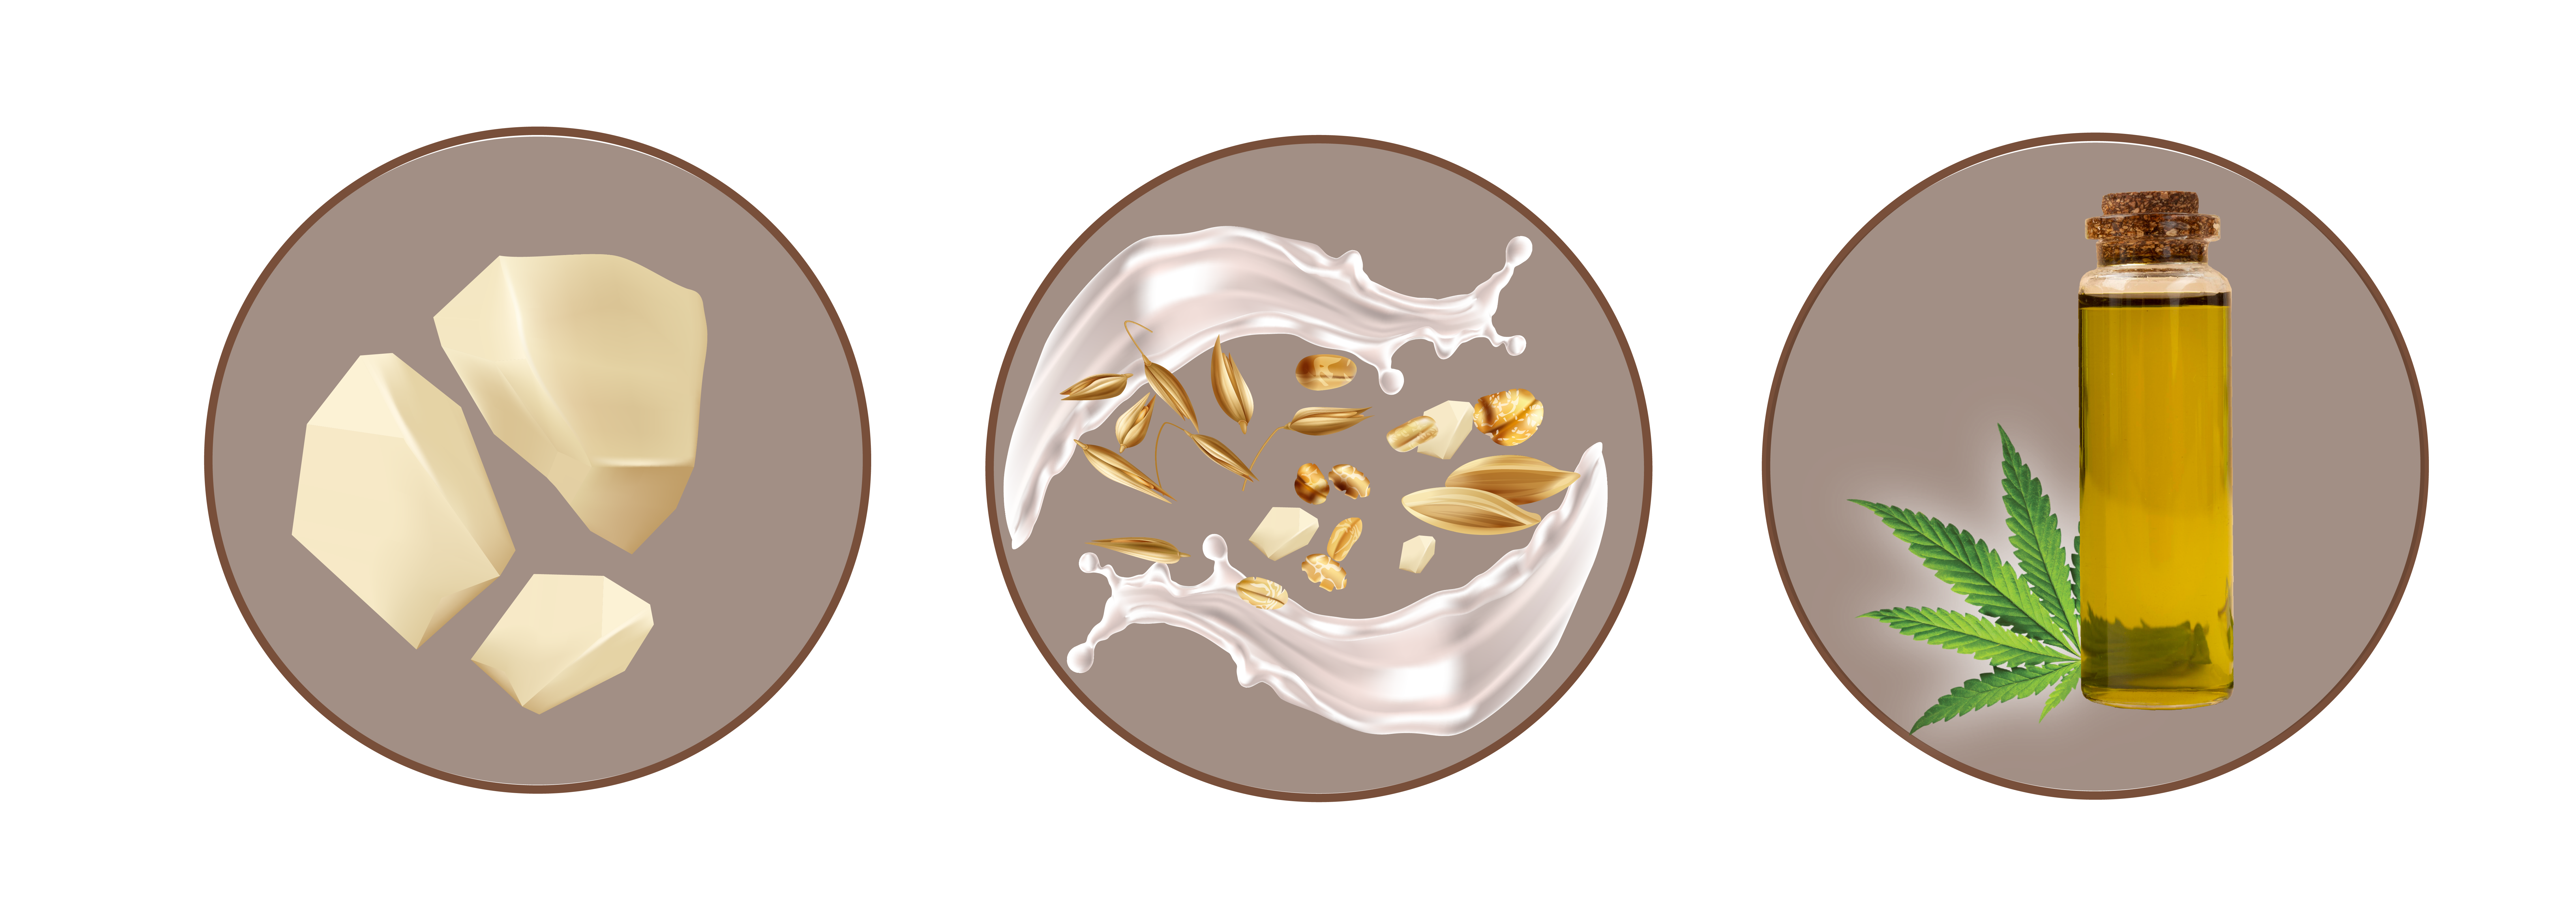 cukierki z biala czekolada 